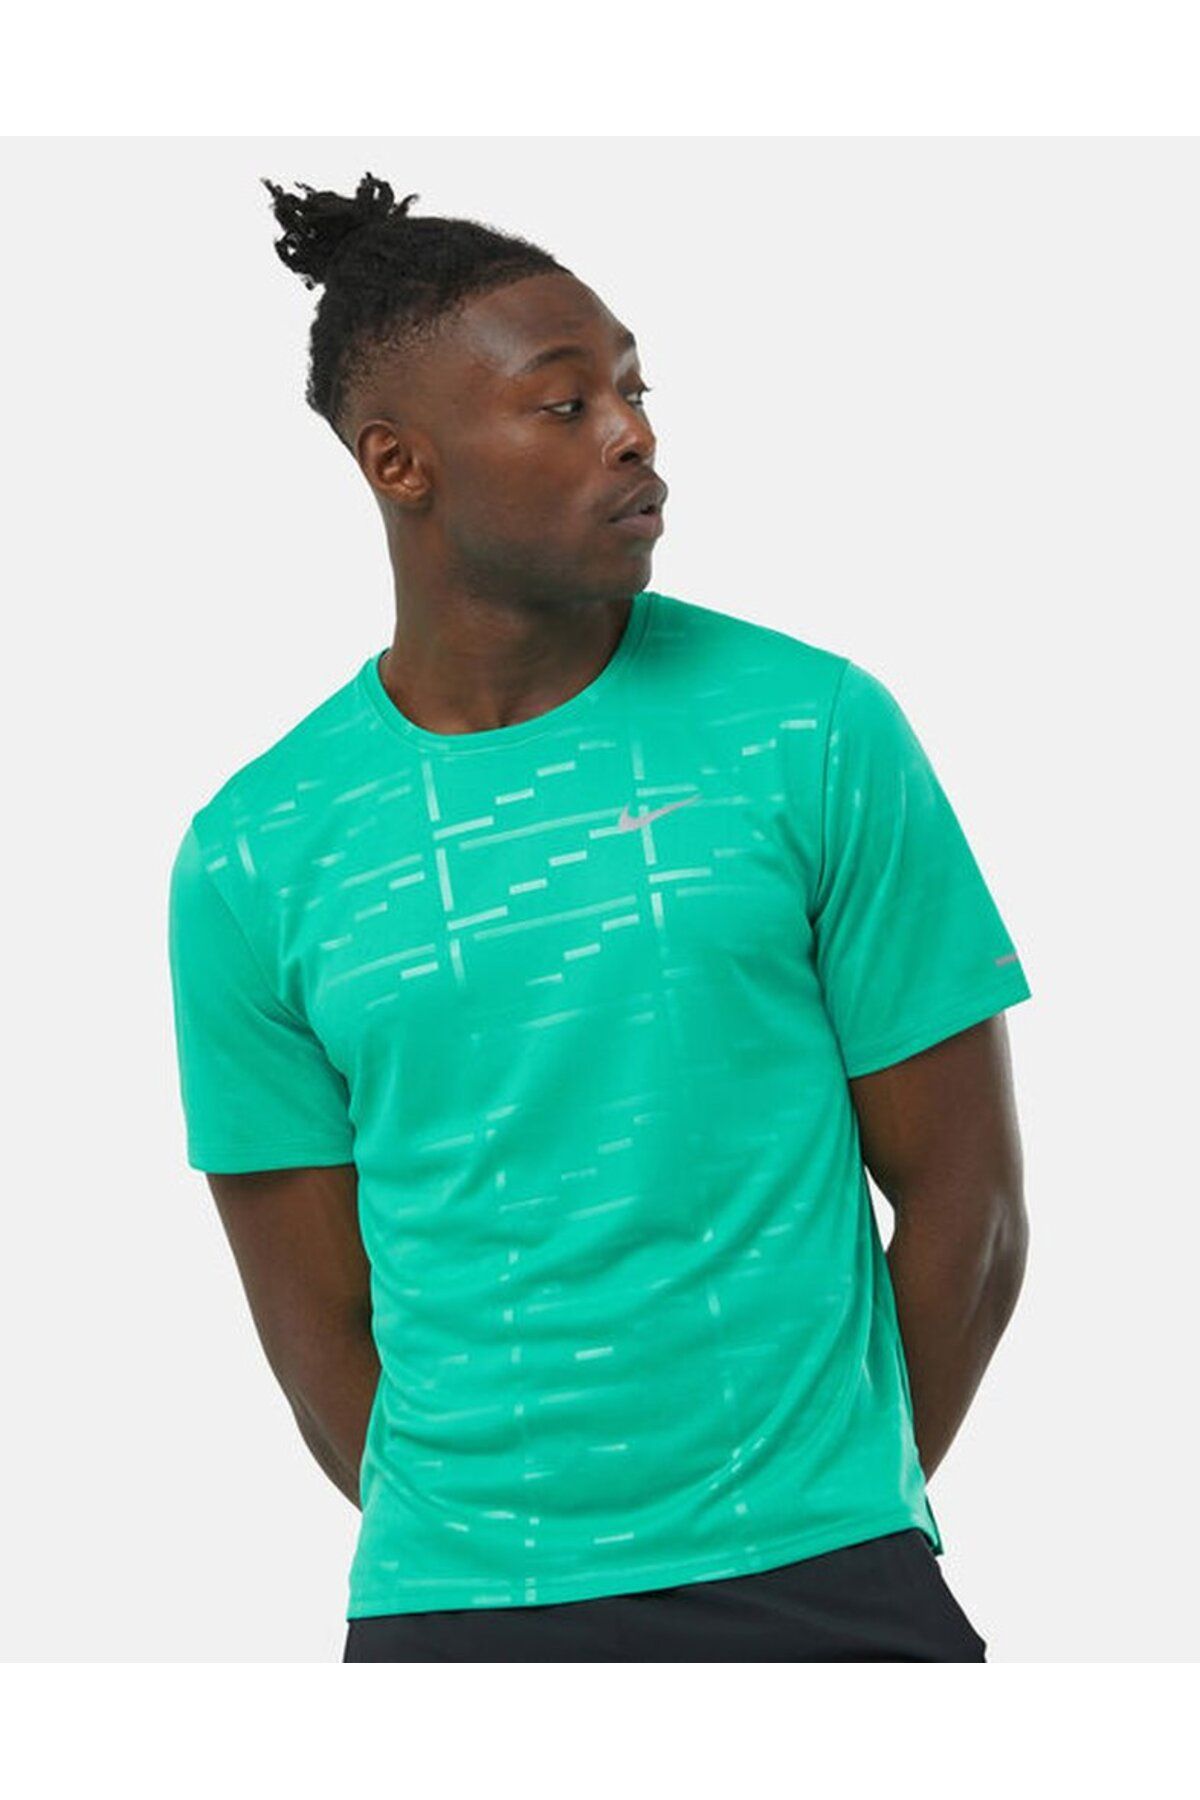 Nike Dri-Fit  UV Korumalı Koşu Antrenman Tişörtü Turkuvaz Yeşil Renk dv8104-372